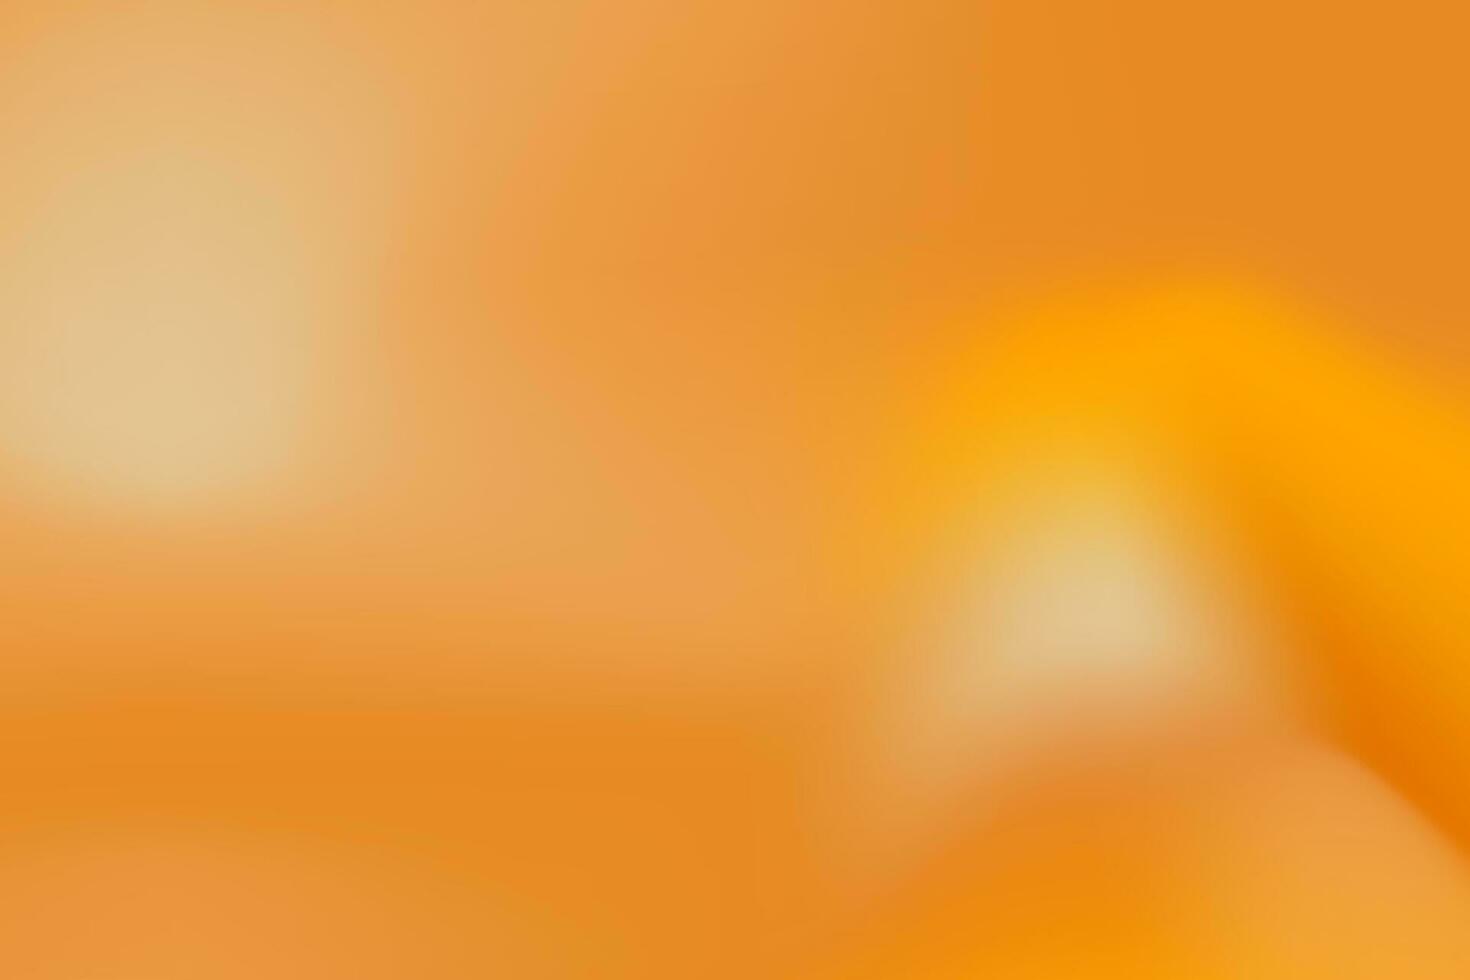 Licht Orange glatt und Sanft Gradient Hintergrund. editierbar Vektor Illustration. eps 10.